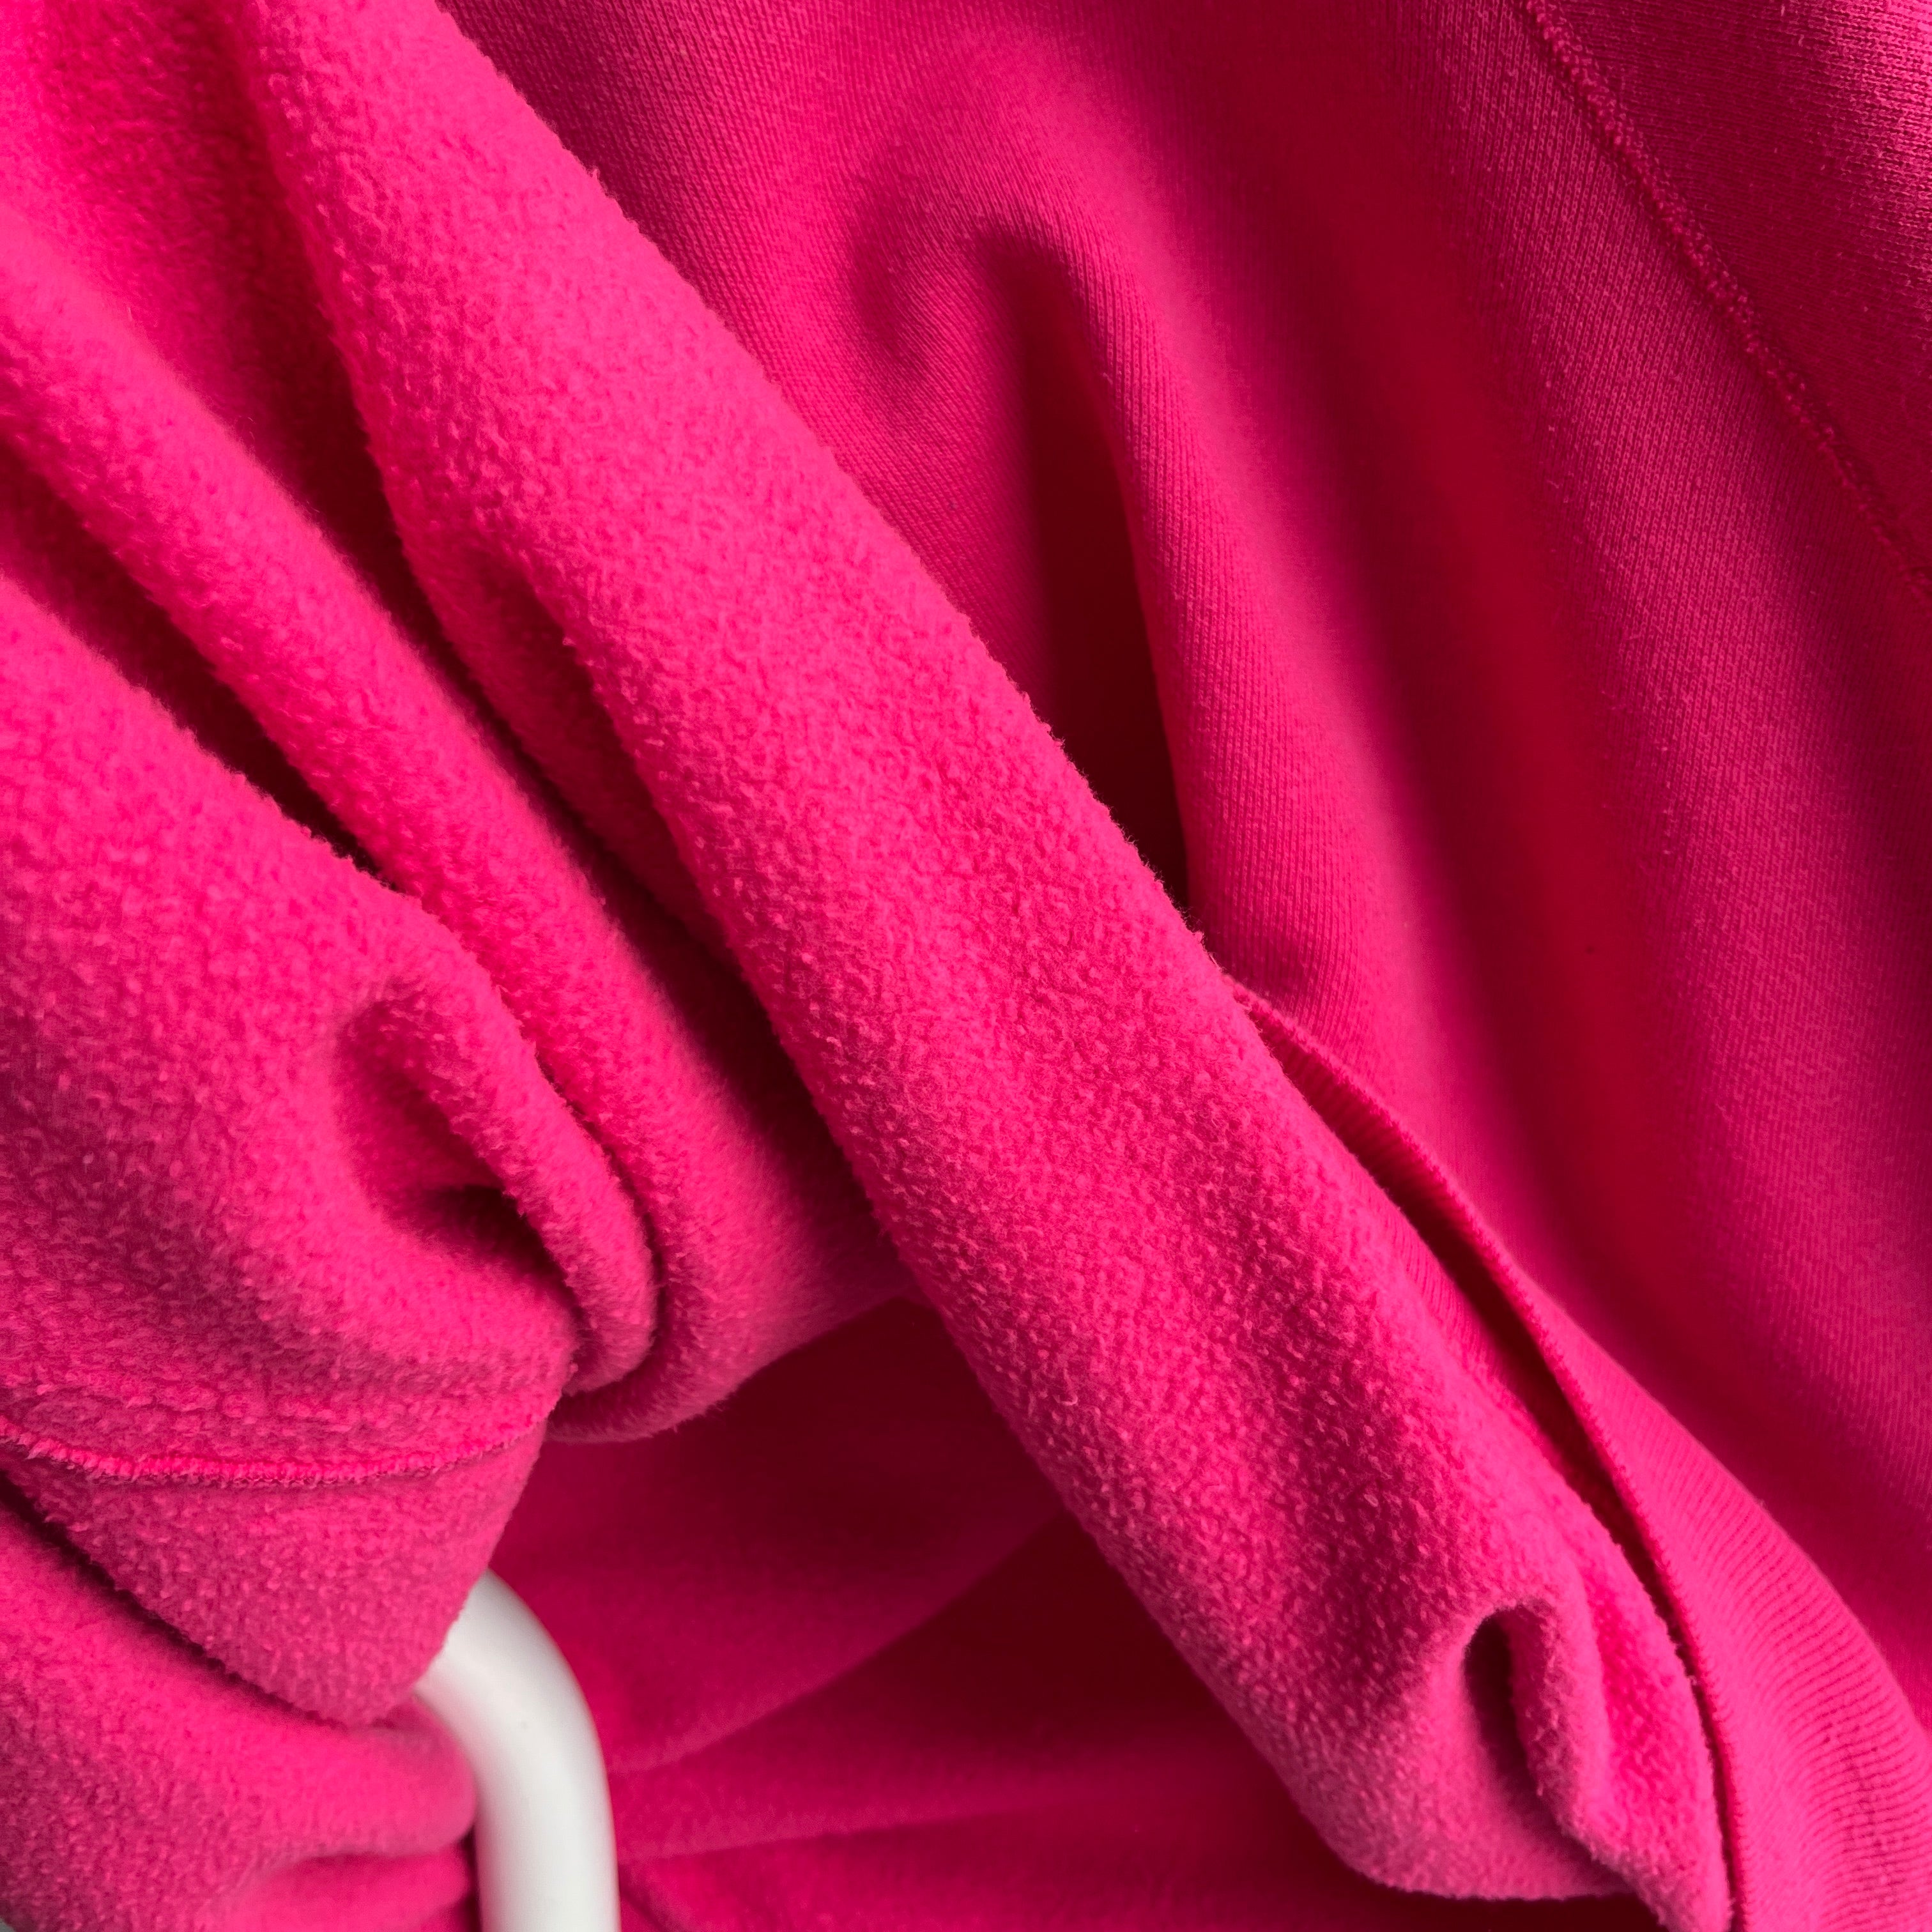 1980/90s OSFMany Neon Pink Sweatshirt with Shorter Long Sleeves - Big Time Swoon